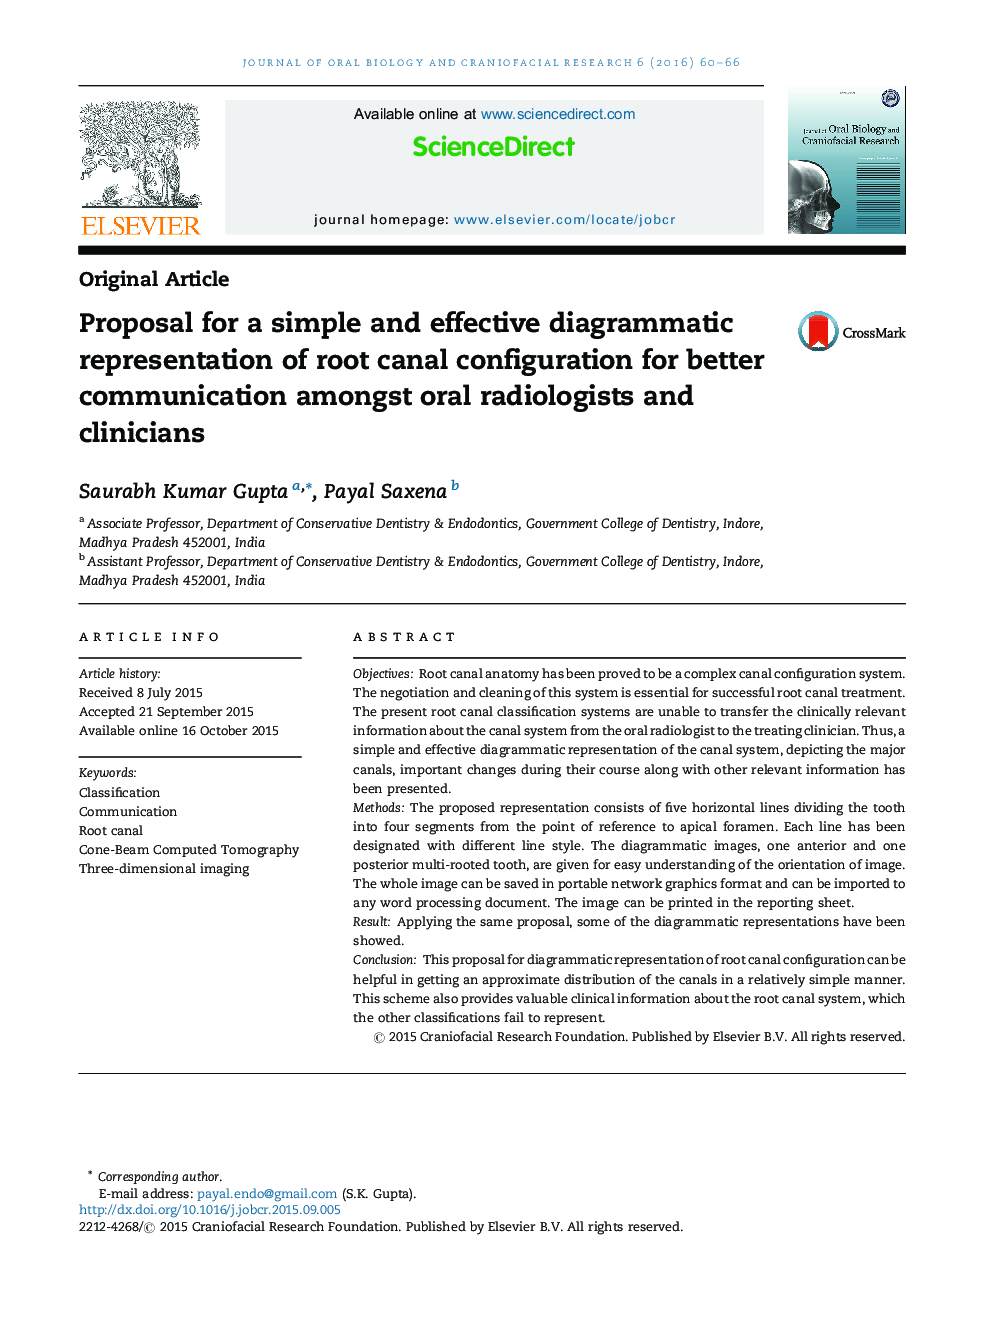 پیشنهاد برای ارائه تصویری ساده و موثر از پیکربندی کانال ریشه برای برقراری ارتباط بهتر در میان رادیولوژیست های دهان و پزشکان 